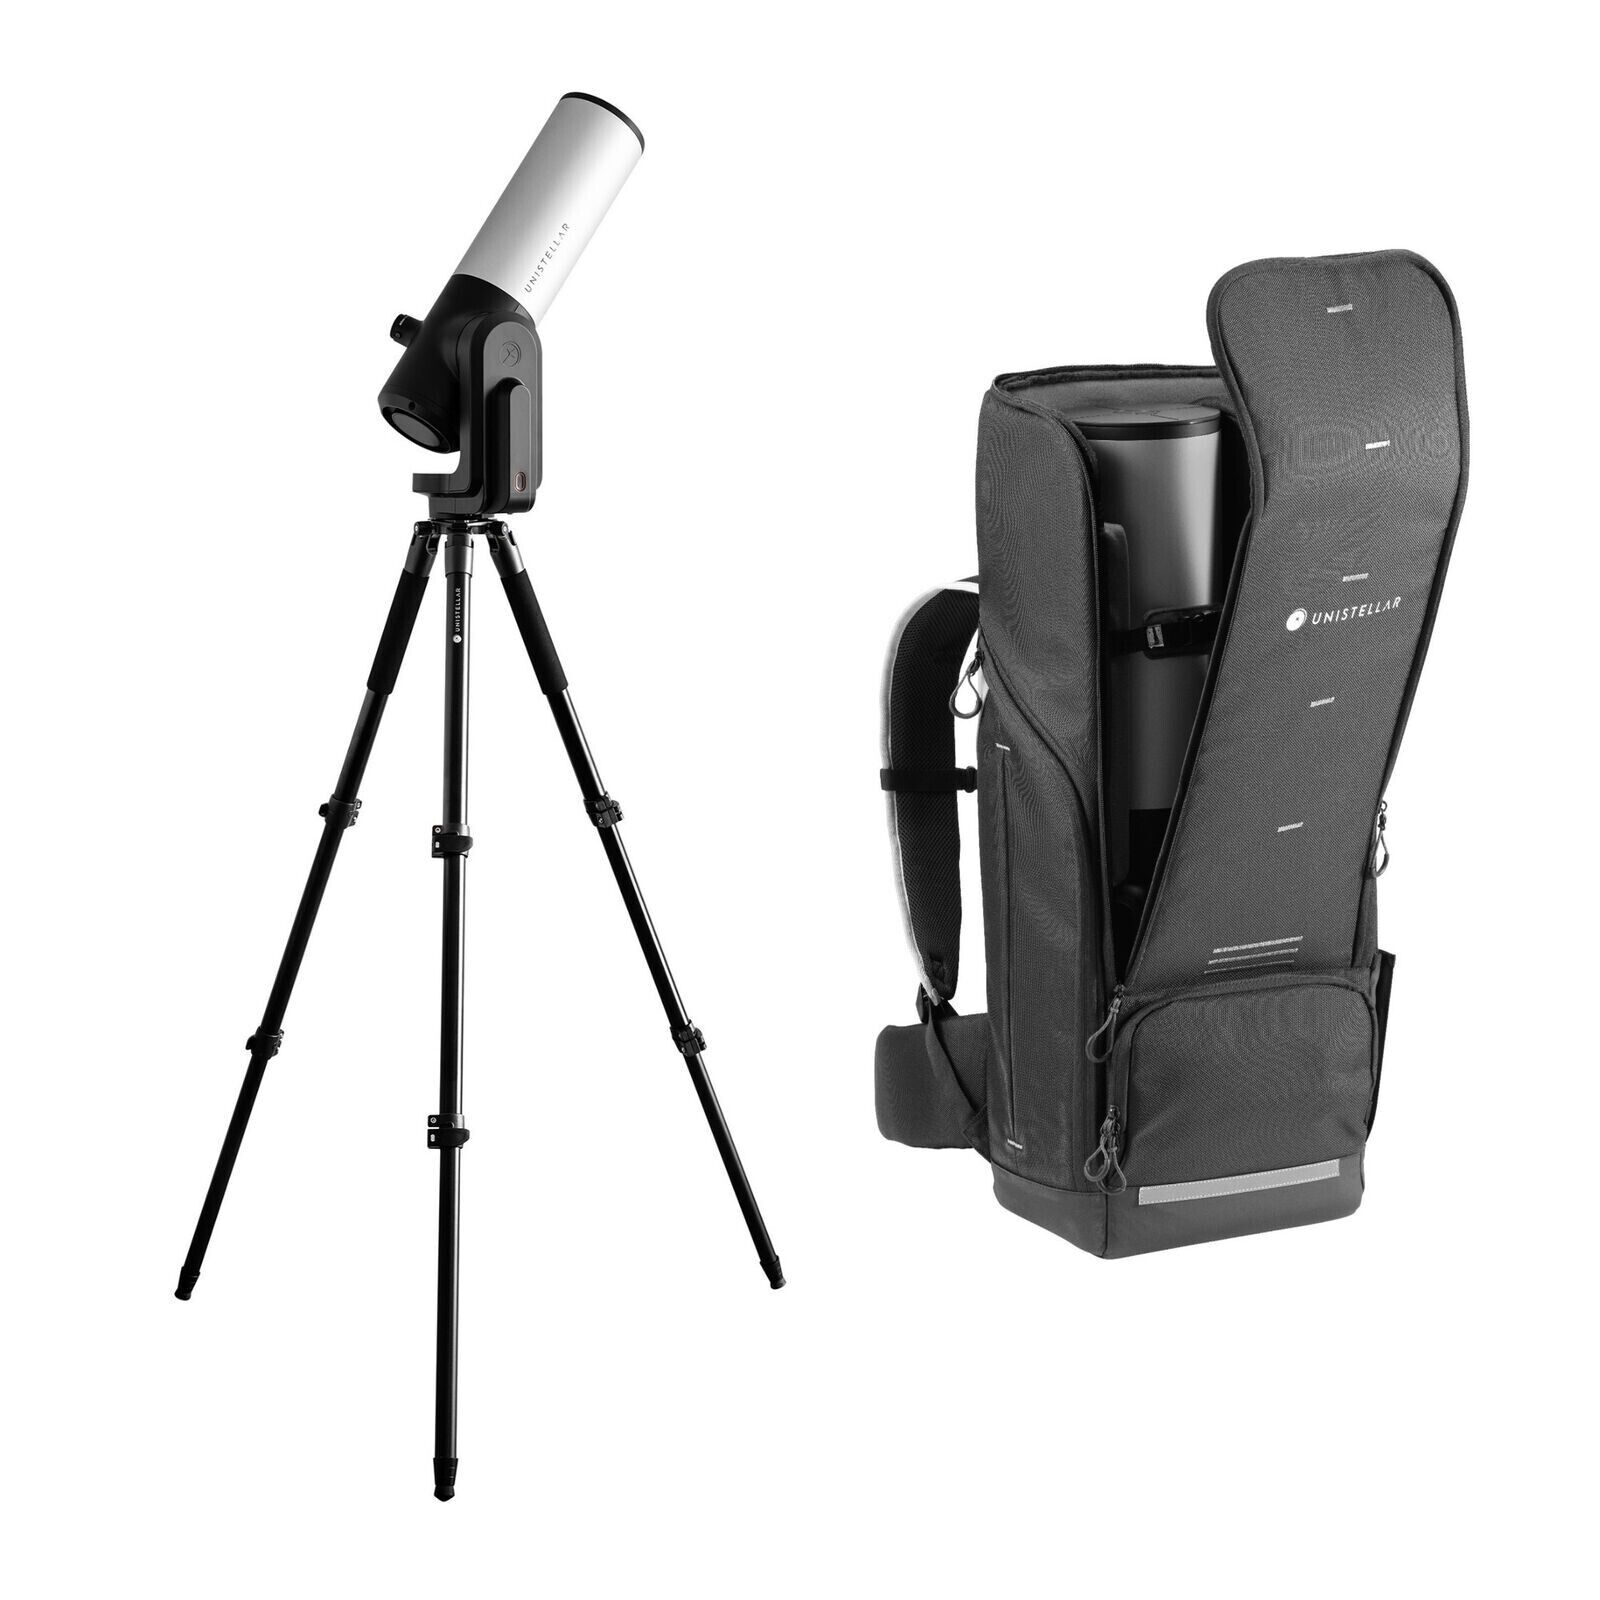 Unistellar eVscope 2 Telescope with Nikon Electronic Eyepiece and Backpack